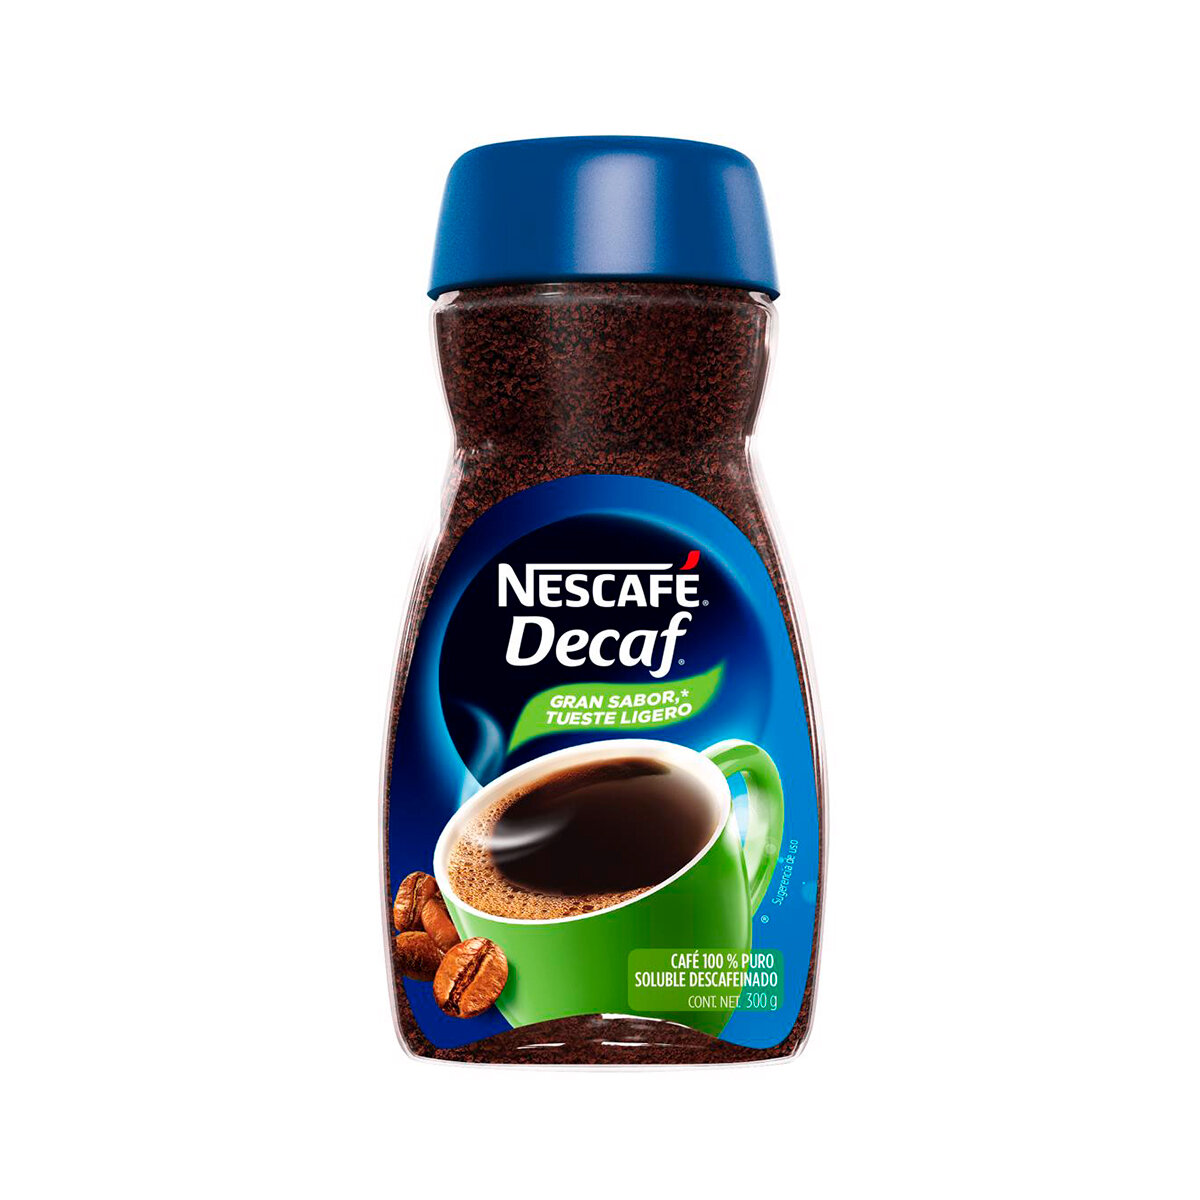 Café soluble Nescafe Decaf descafeinado3 Hecho a base de granos de café 100% arábica, ofreciendo un jugoso y suave sabor con el aroma unico de rescate. ideal para empezar un dia con un cafe descafeinado - DECAF 300G